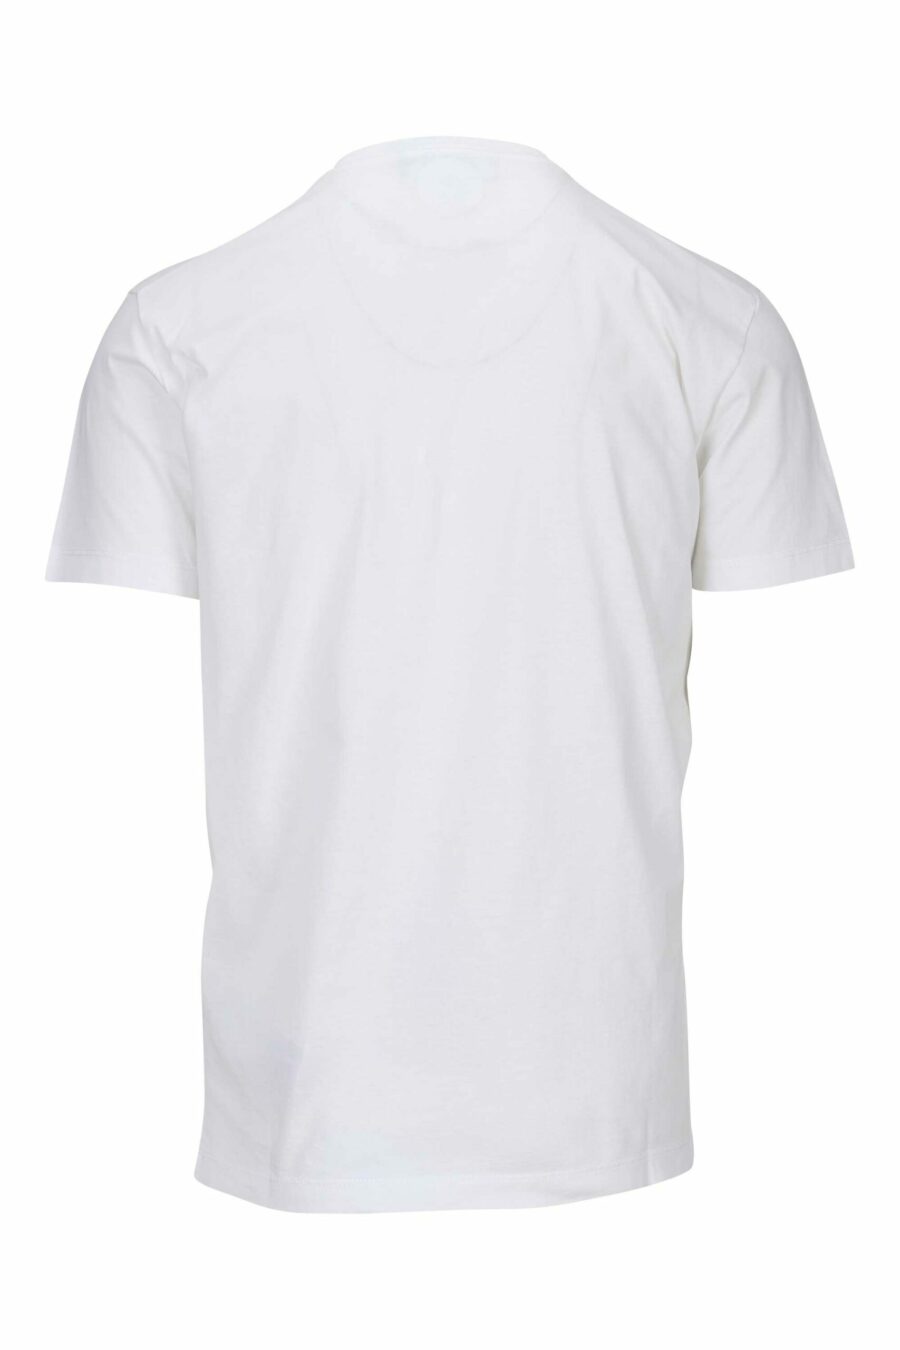 T-shirt blanc avec logo "icon" tamponné - 8054148362676 1 à l'échelle